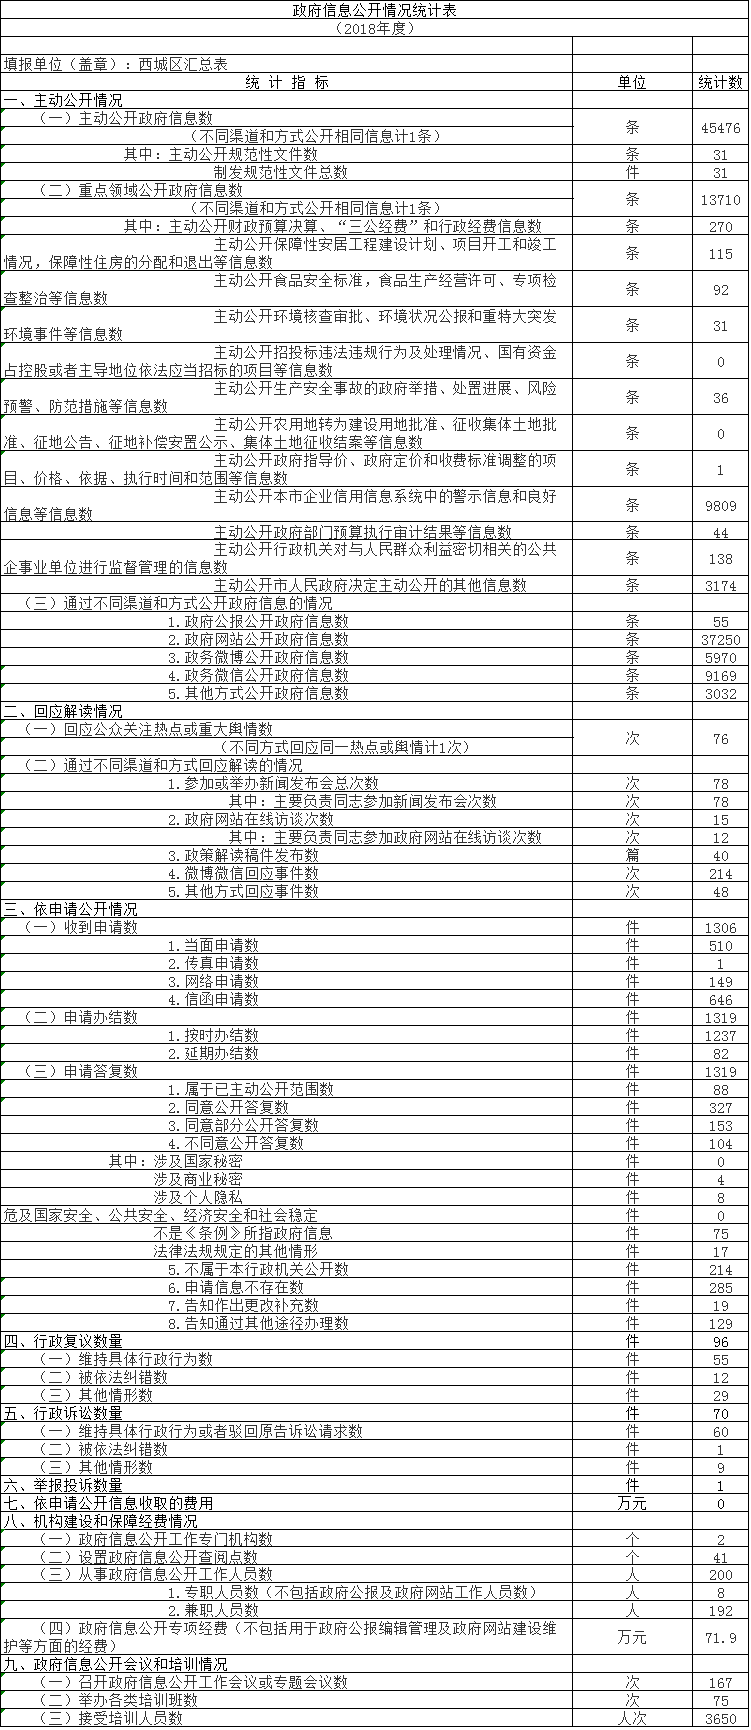 北京市西城区人民政府2018年政府信息公开工作年度报告